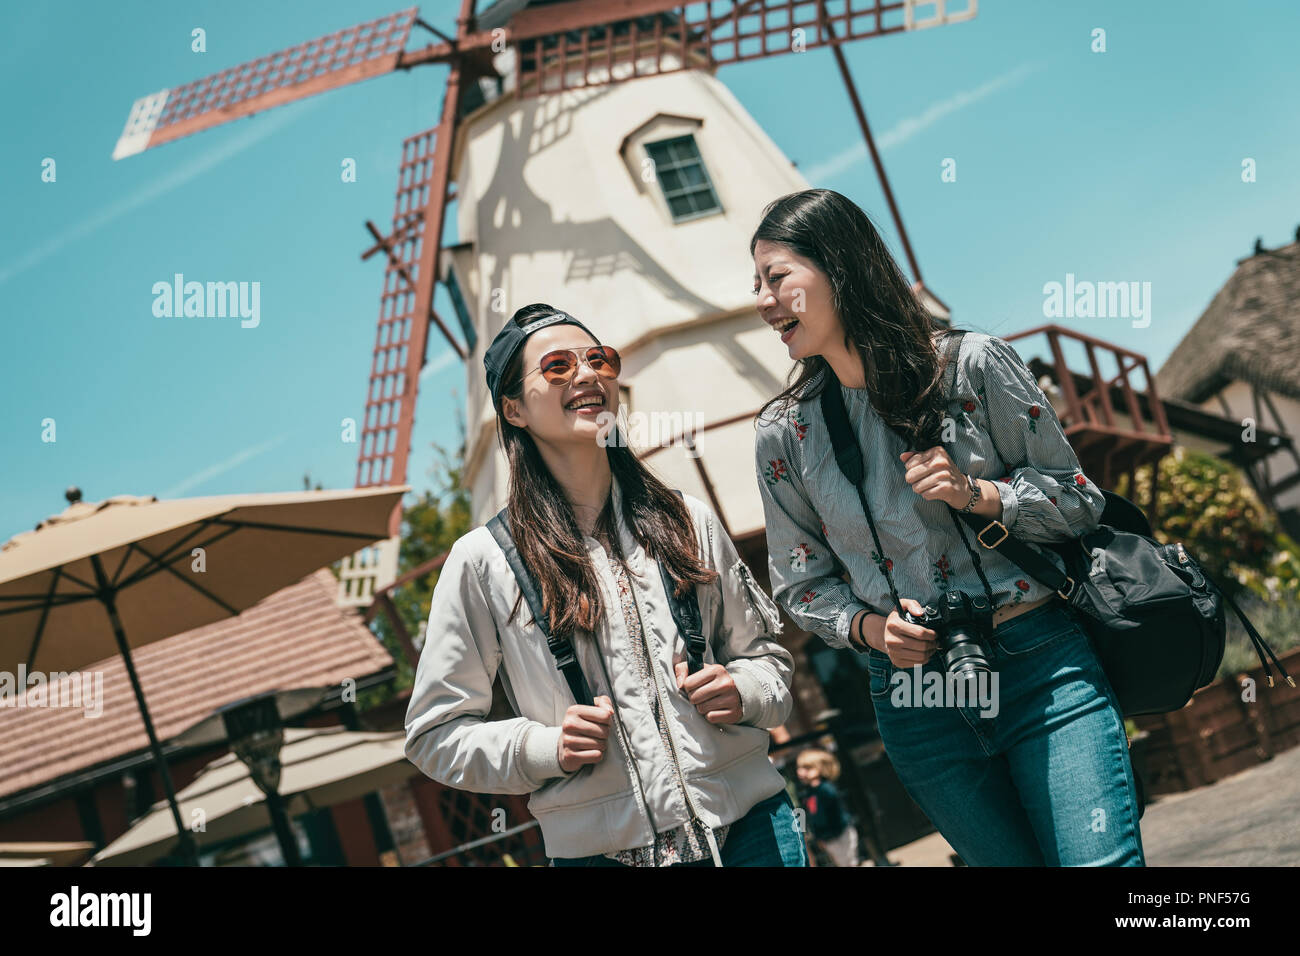 Freunde reden gerne beim Sightseeing in einer schönen Stadt mit einem Hintergrund von Mühle amd Häuser. Stockfoto